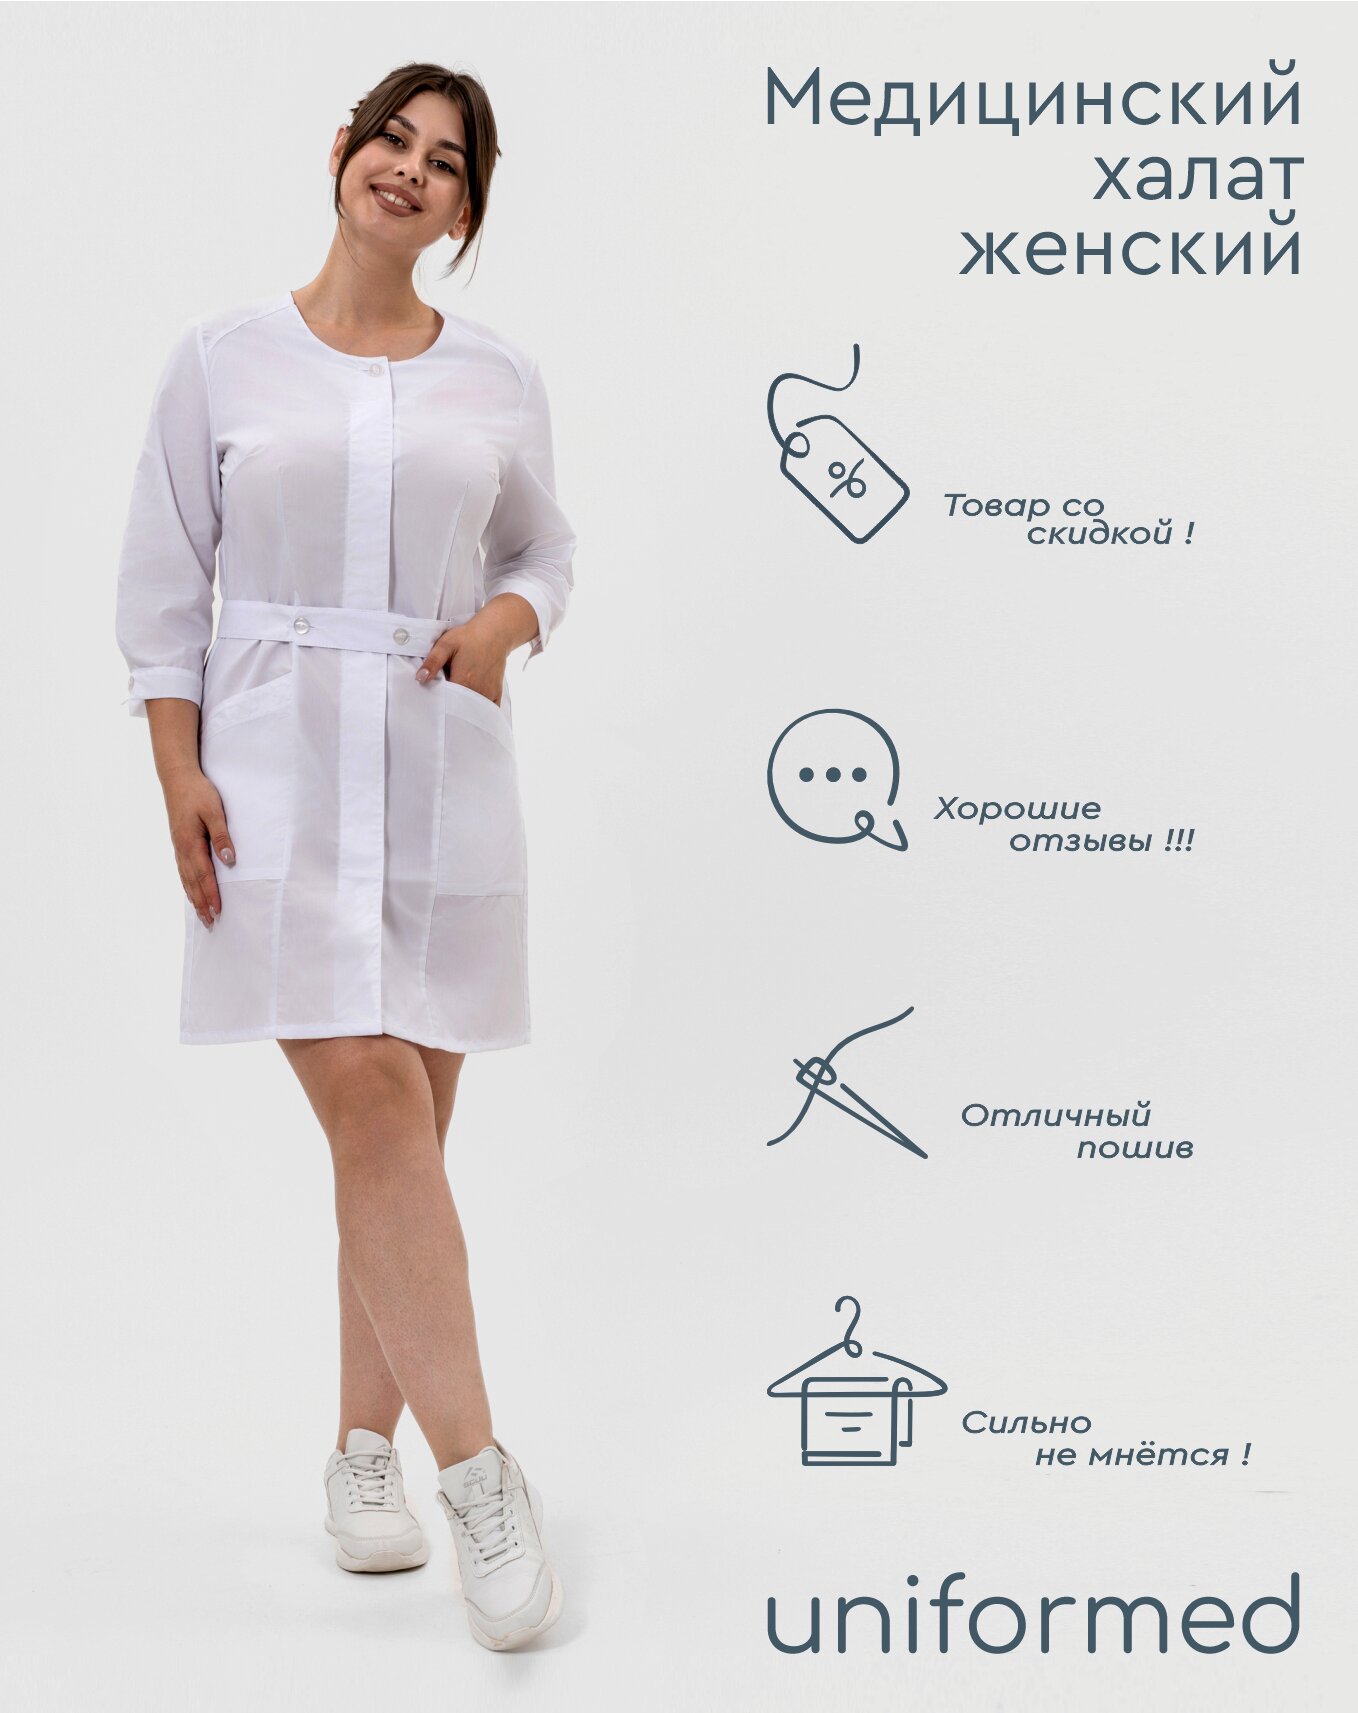 Медицинский женский халат 333.1.1 Uniformed, ткань тиси, укороченный, рукав 3/4, на пуговицах, цвет белый, рост 170-176, размер 54